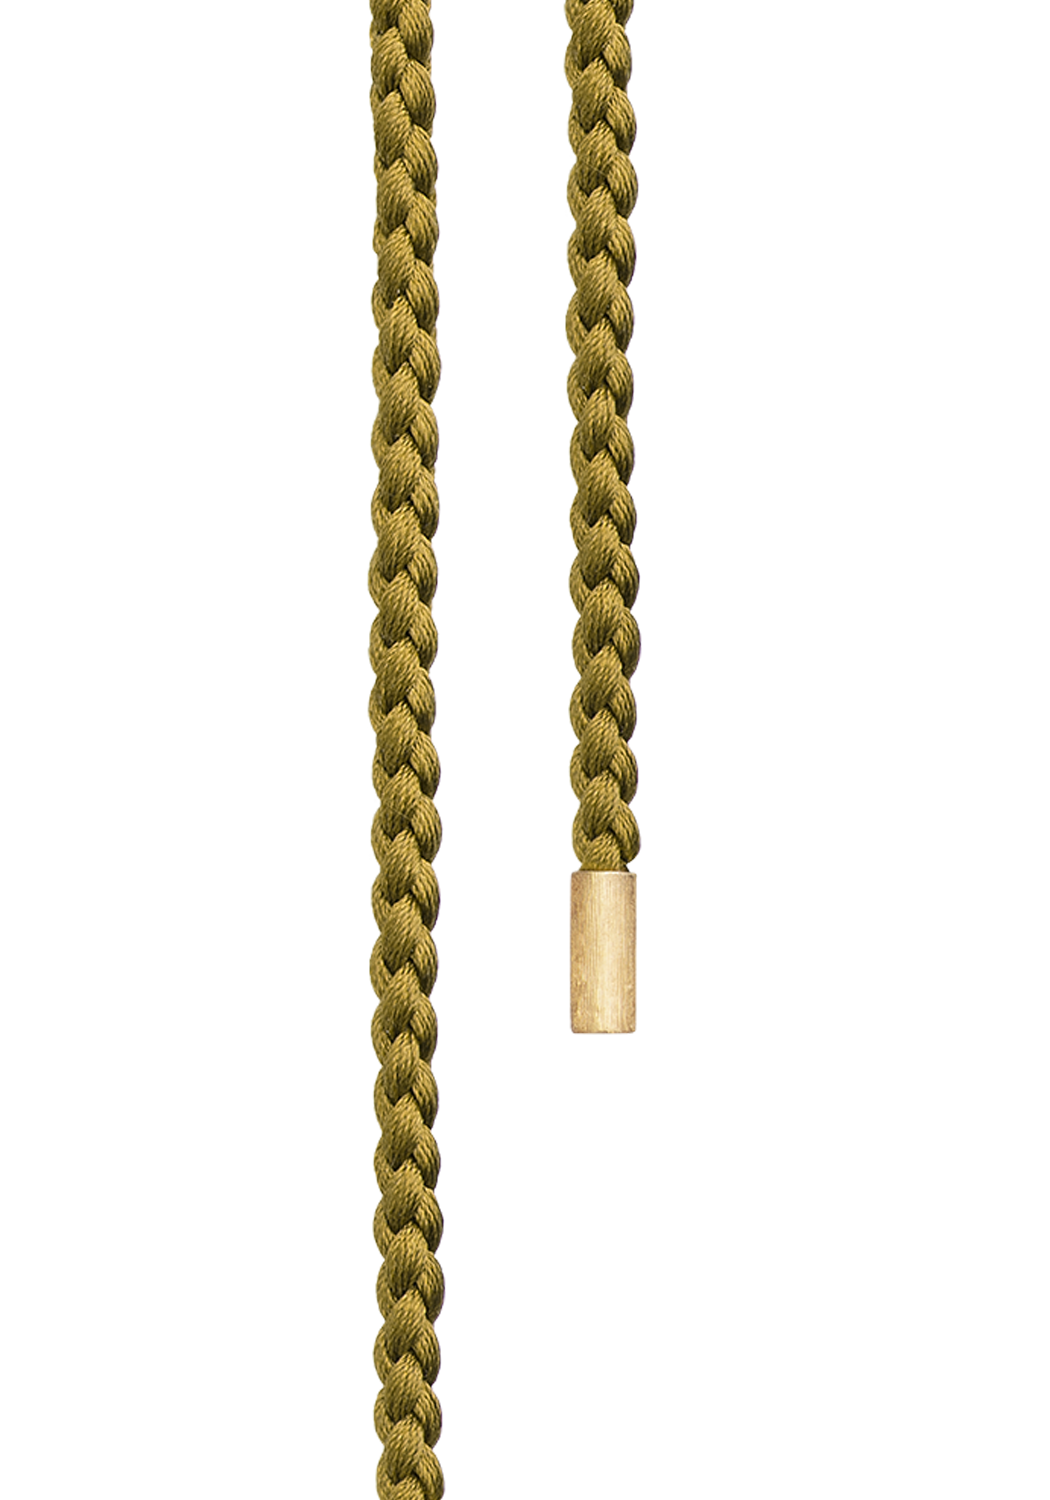 Ole Lynggaard Twisted Mokuba 18KYG Golden Silk String Wrap | Ref. 1908-408 | OsterJewelers.com